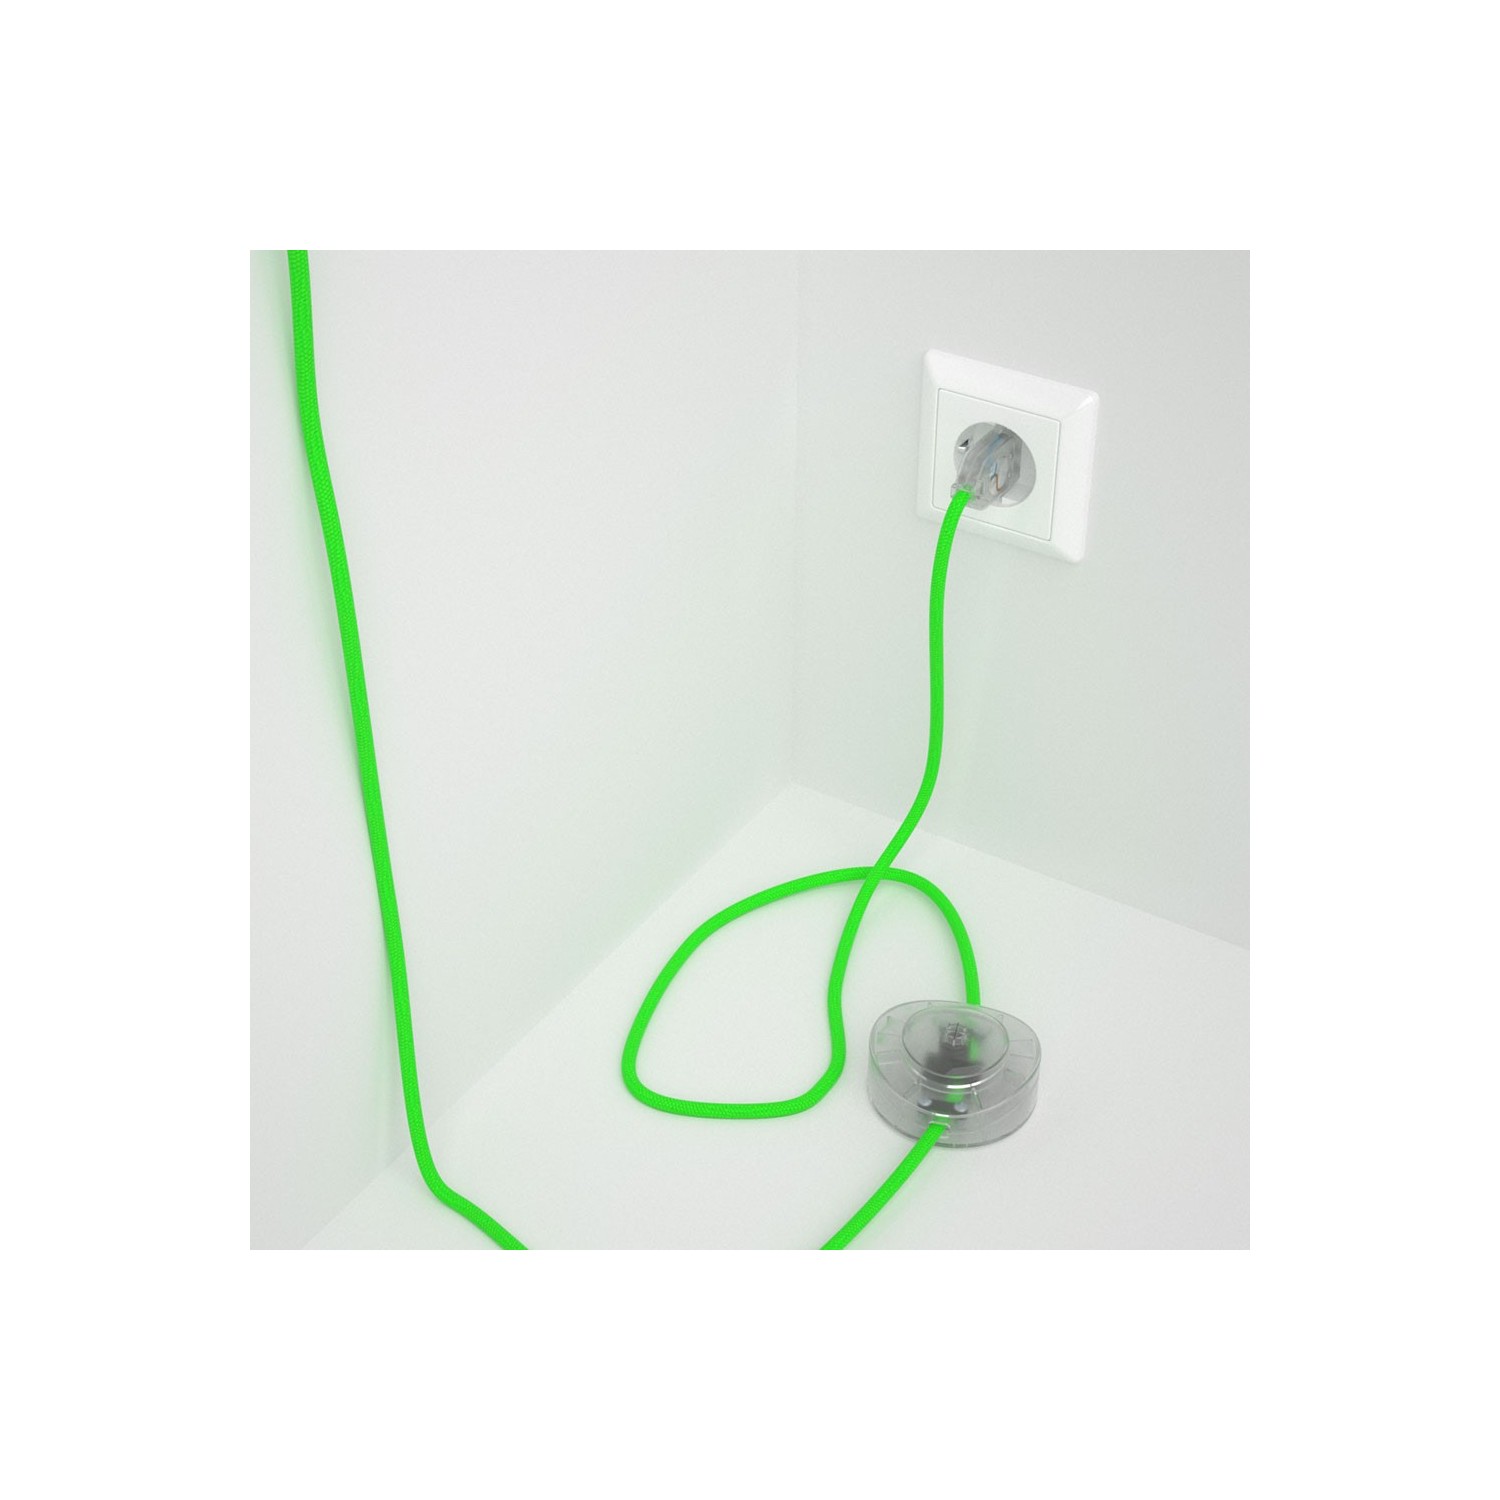 Strijkijzersnoer set RF06 neon groen viscose 3 m. voor staande lamp met stekker en voetschakelaar.